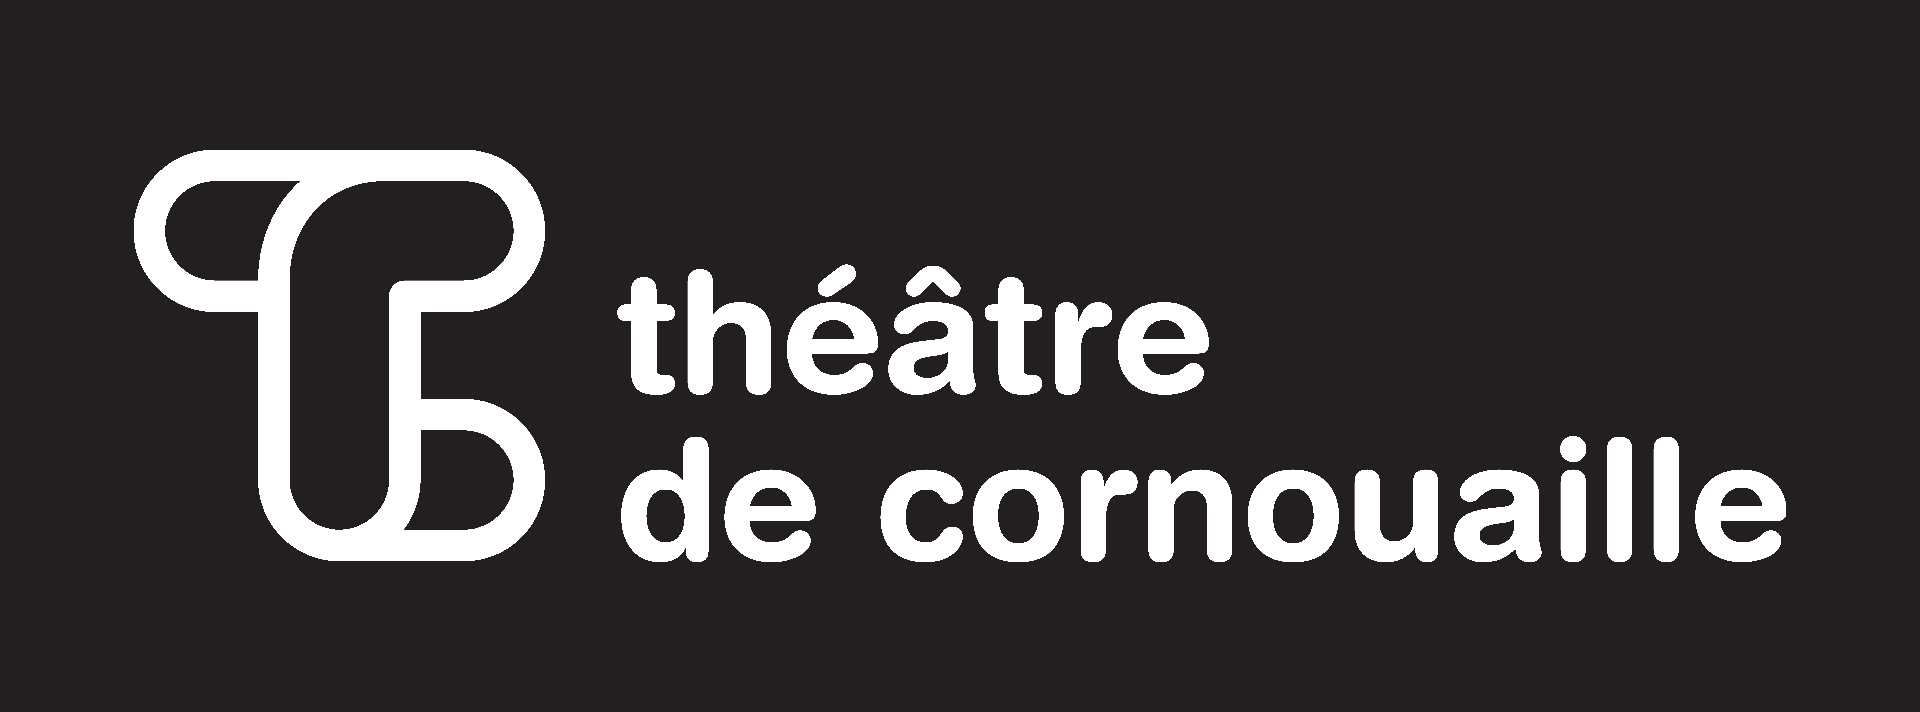 Théâtre de Cornouaille 